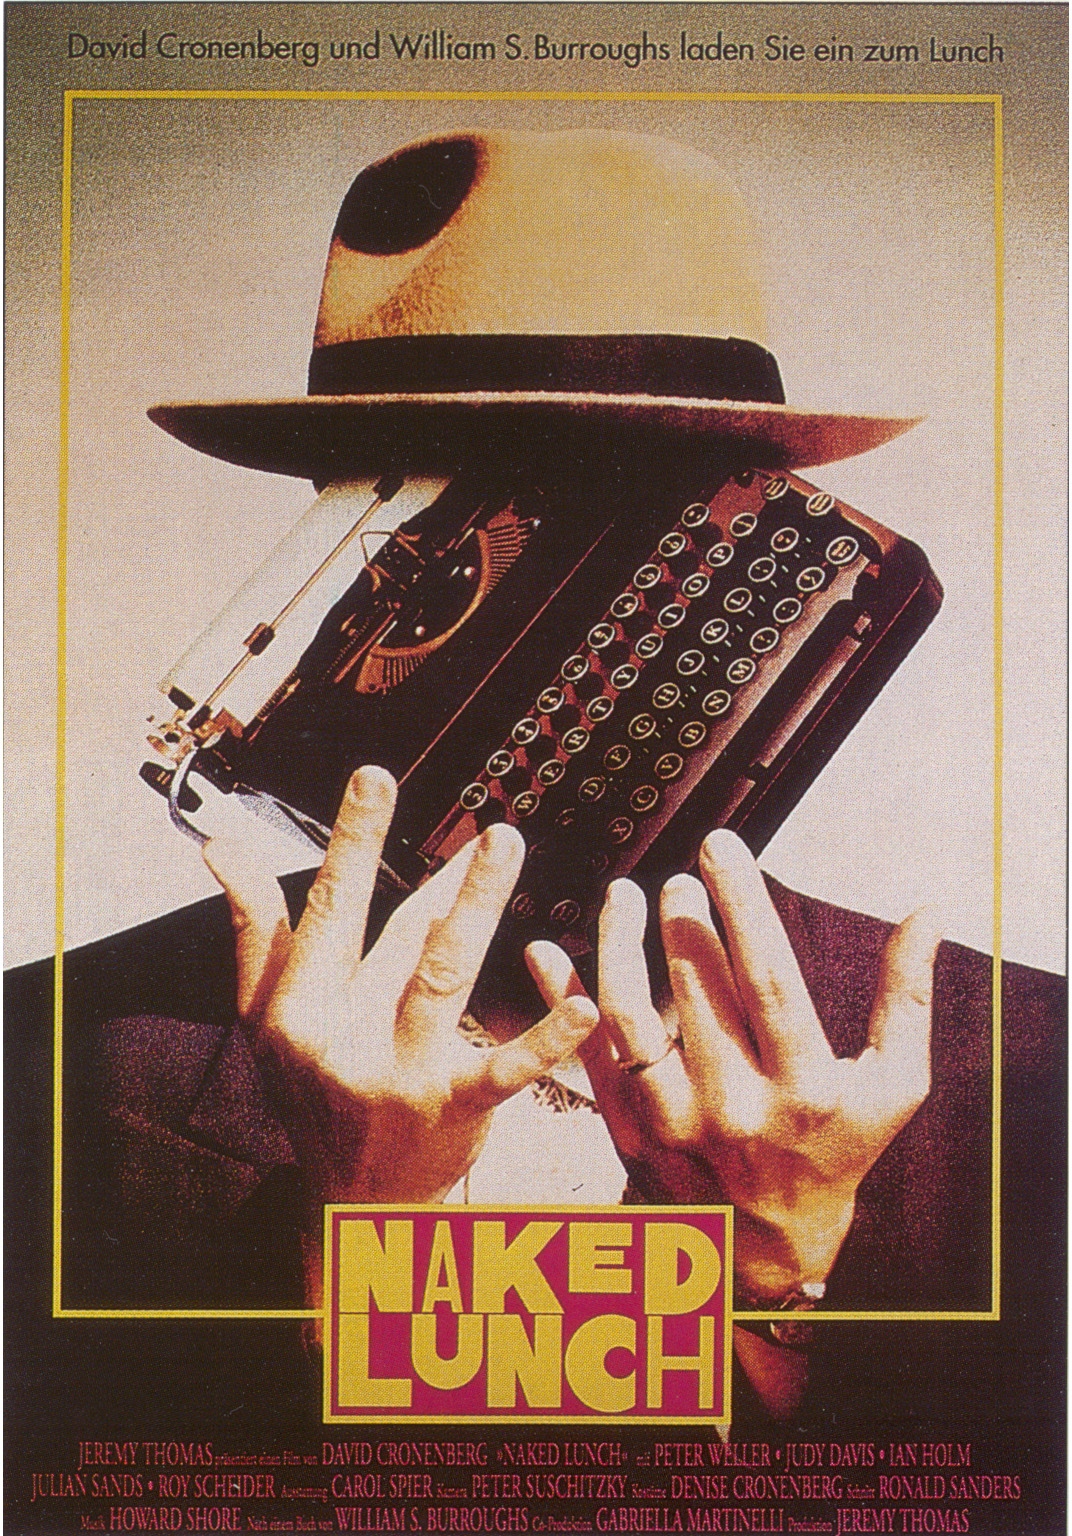 Cartel alemán de la película de David Cronenberg "El almuerzo desnudo"